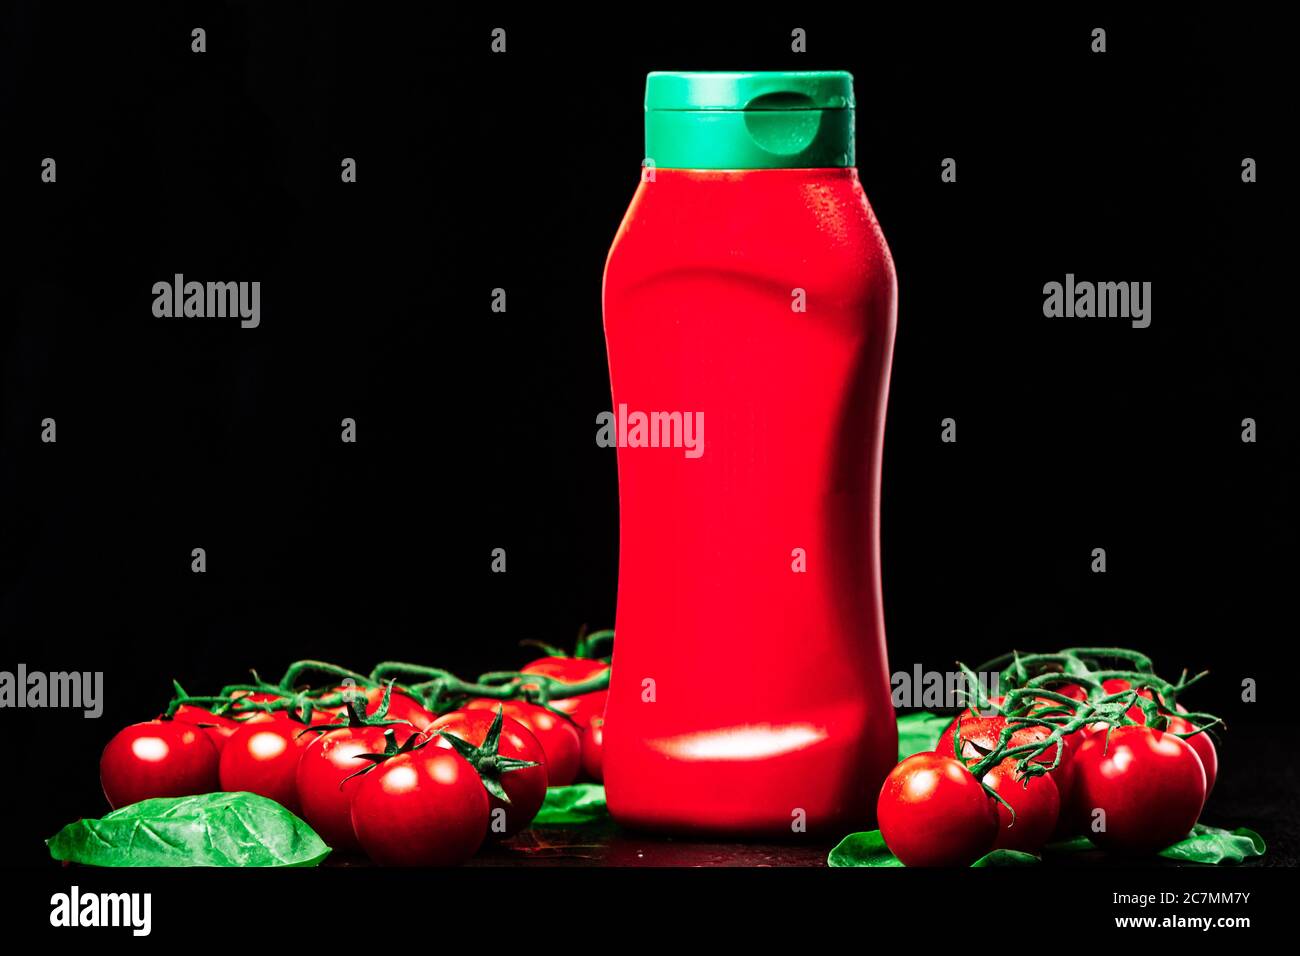 Flasche, Tube roter Ketchup mit grüner Kappe und zwei reife Zweige  Kirschtomaten mit Spinat auf schwarzem Hintergrund. Nahaufnahme,  horizontale Orienta Stockfotografie - Alamy